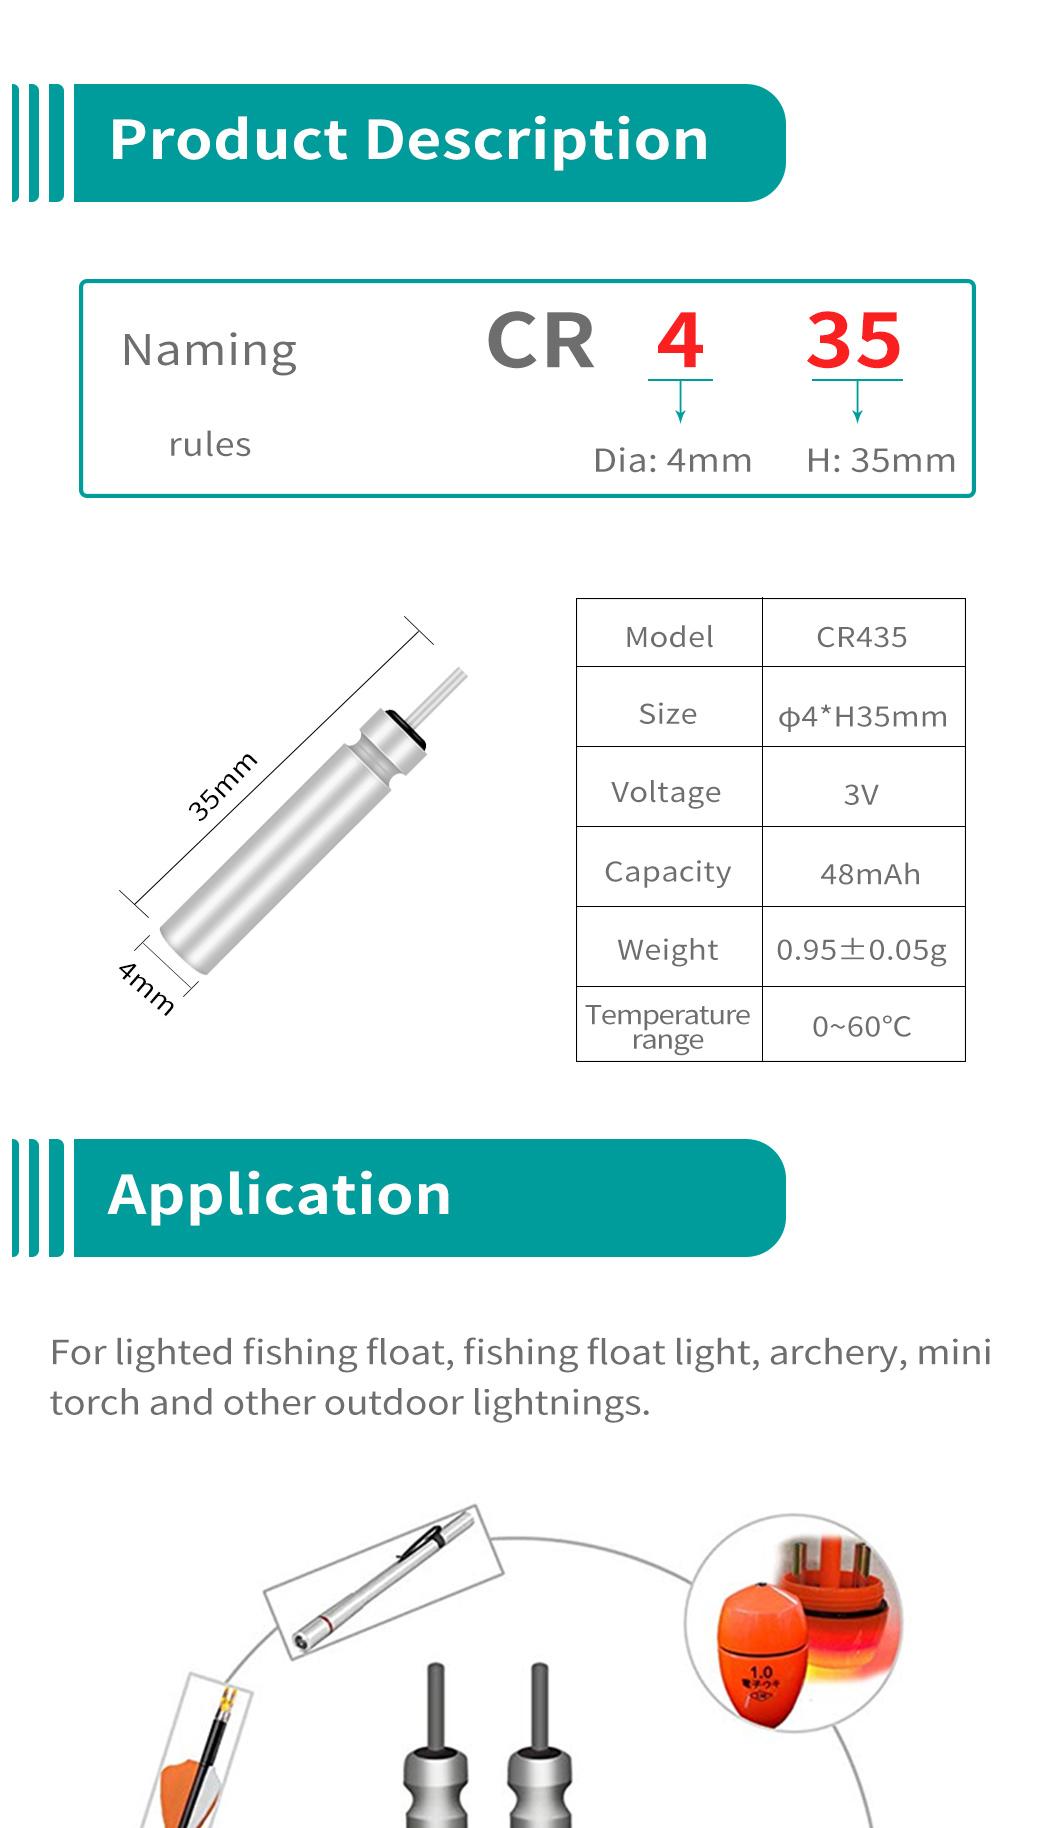 Dlyfull Cr435 3V Pin Type Waterproof Pin Battery for Fishing Float